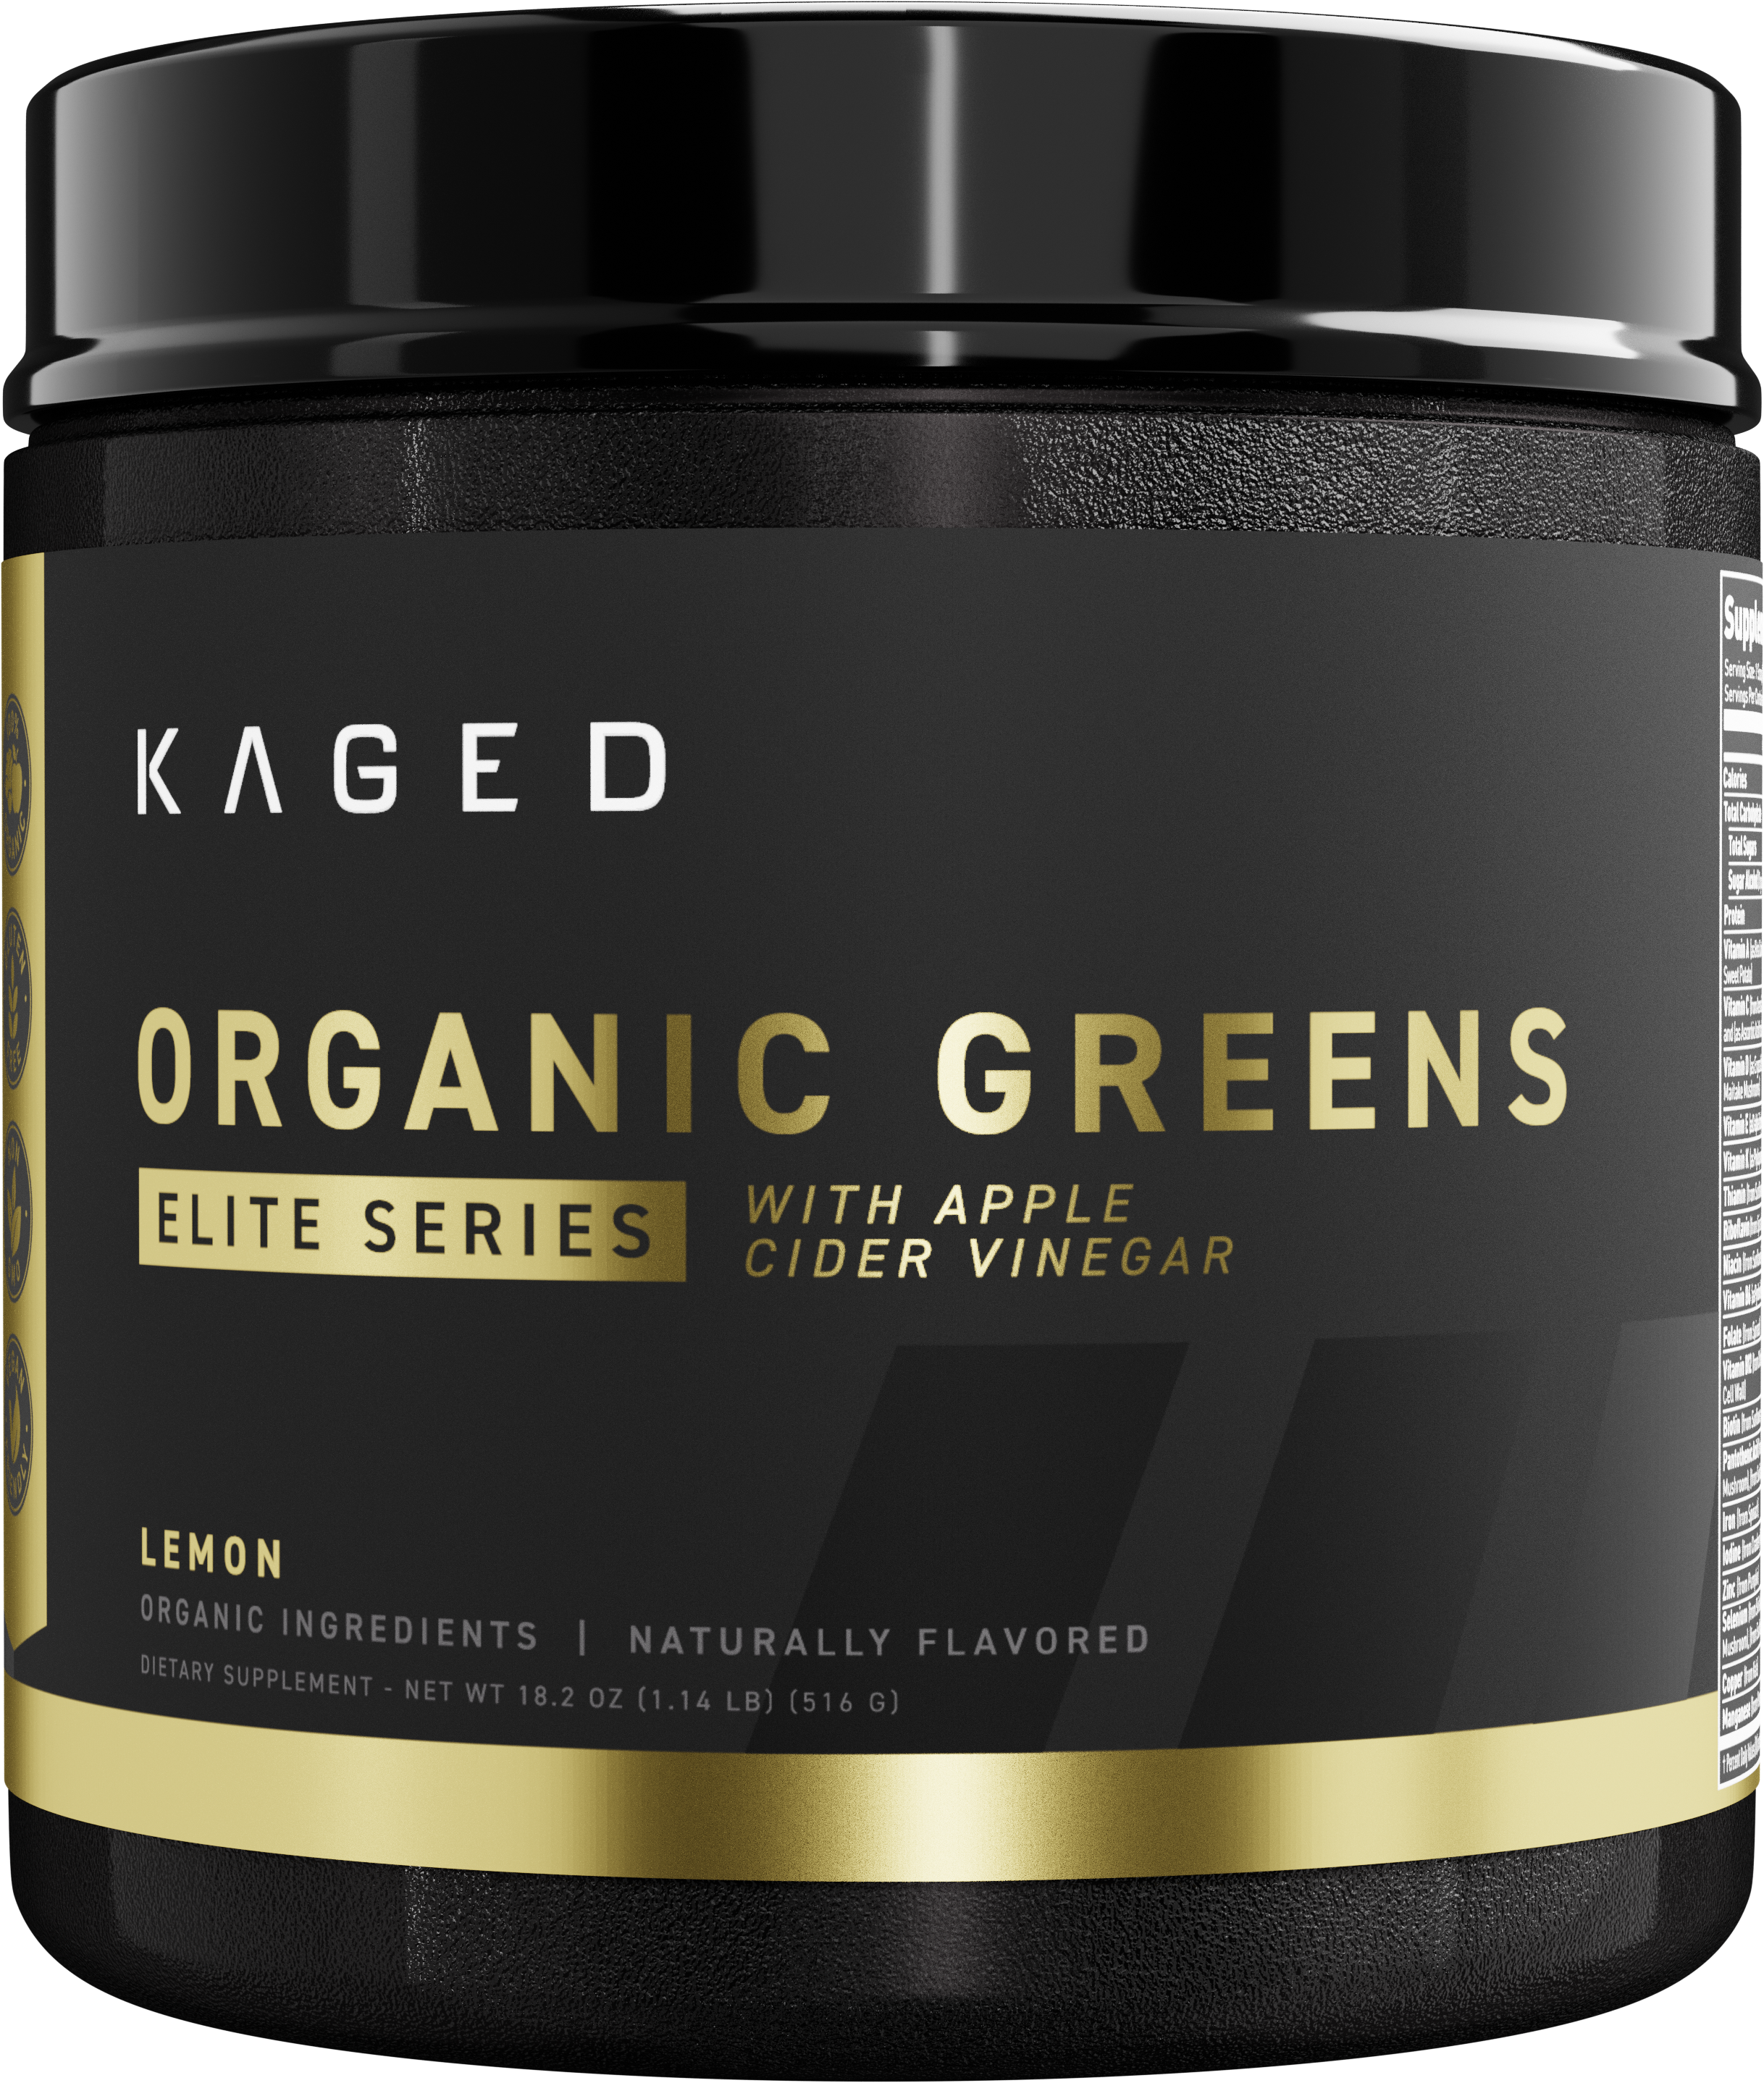 Kaged Elite Series Organic Greens